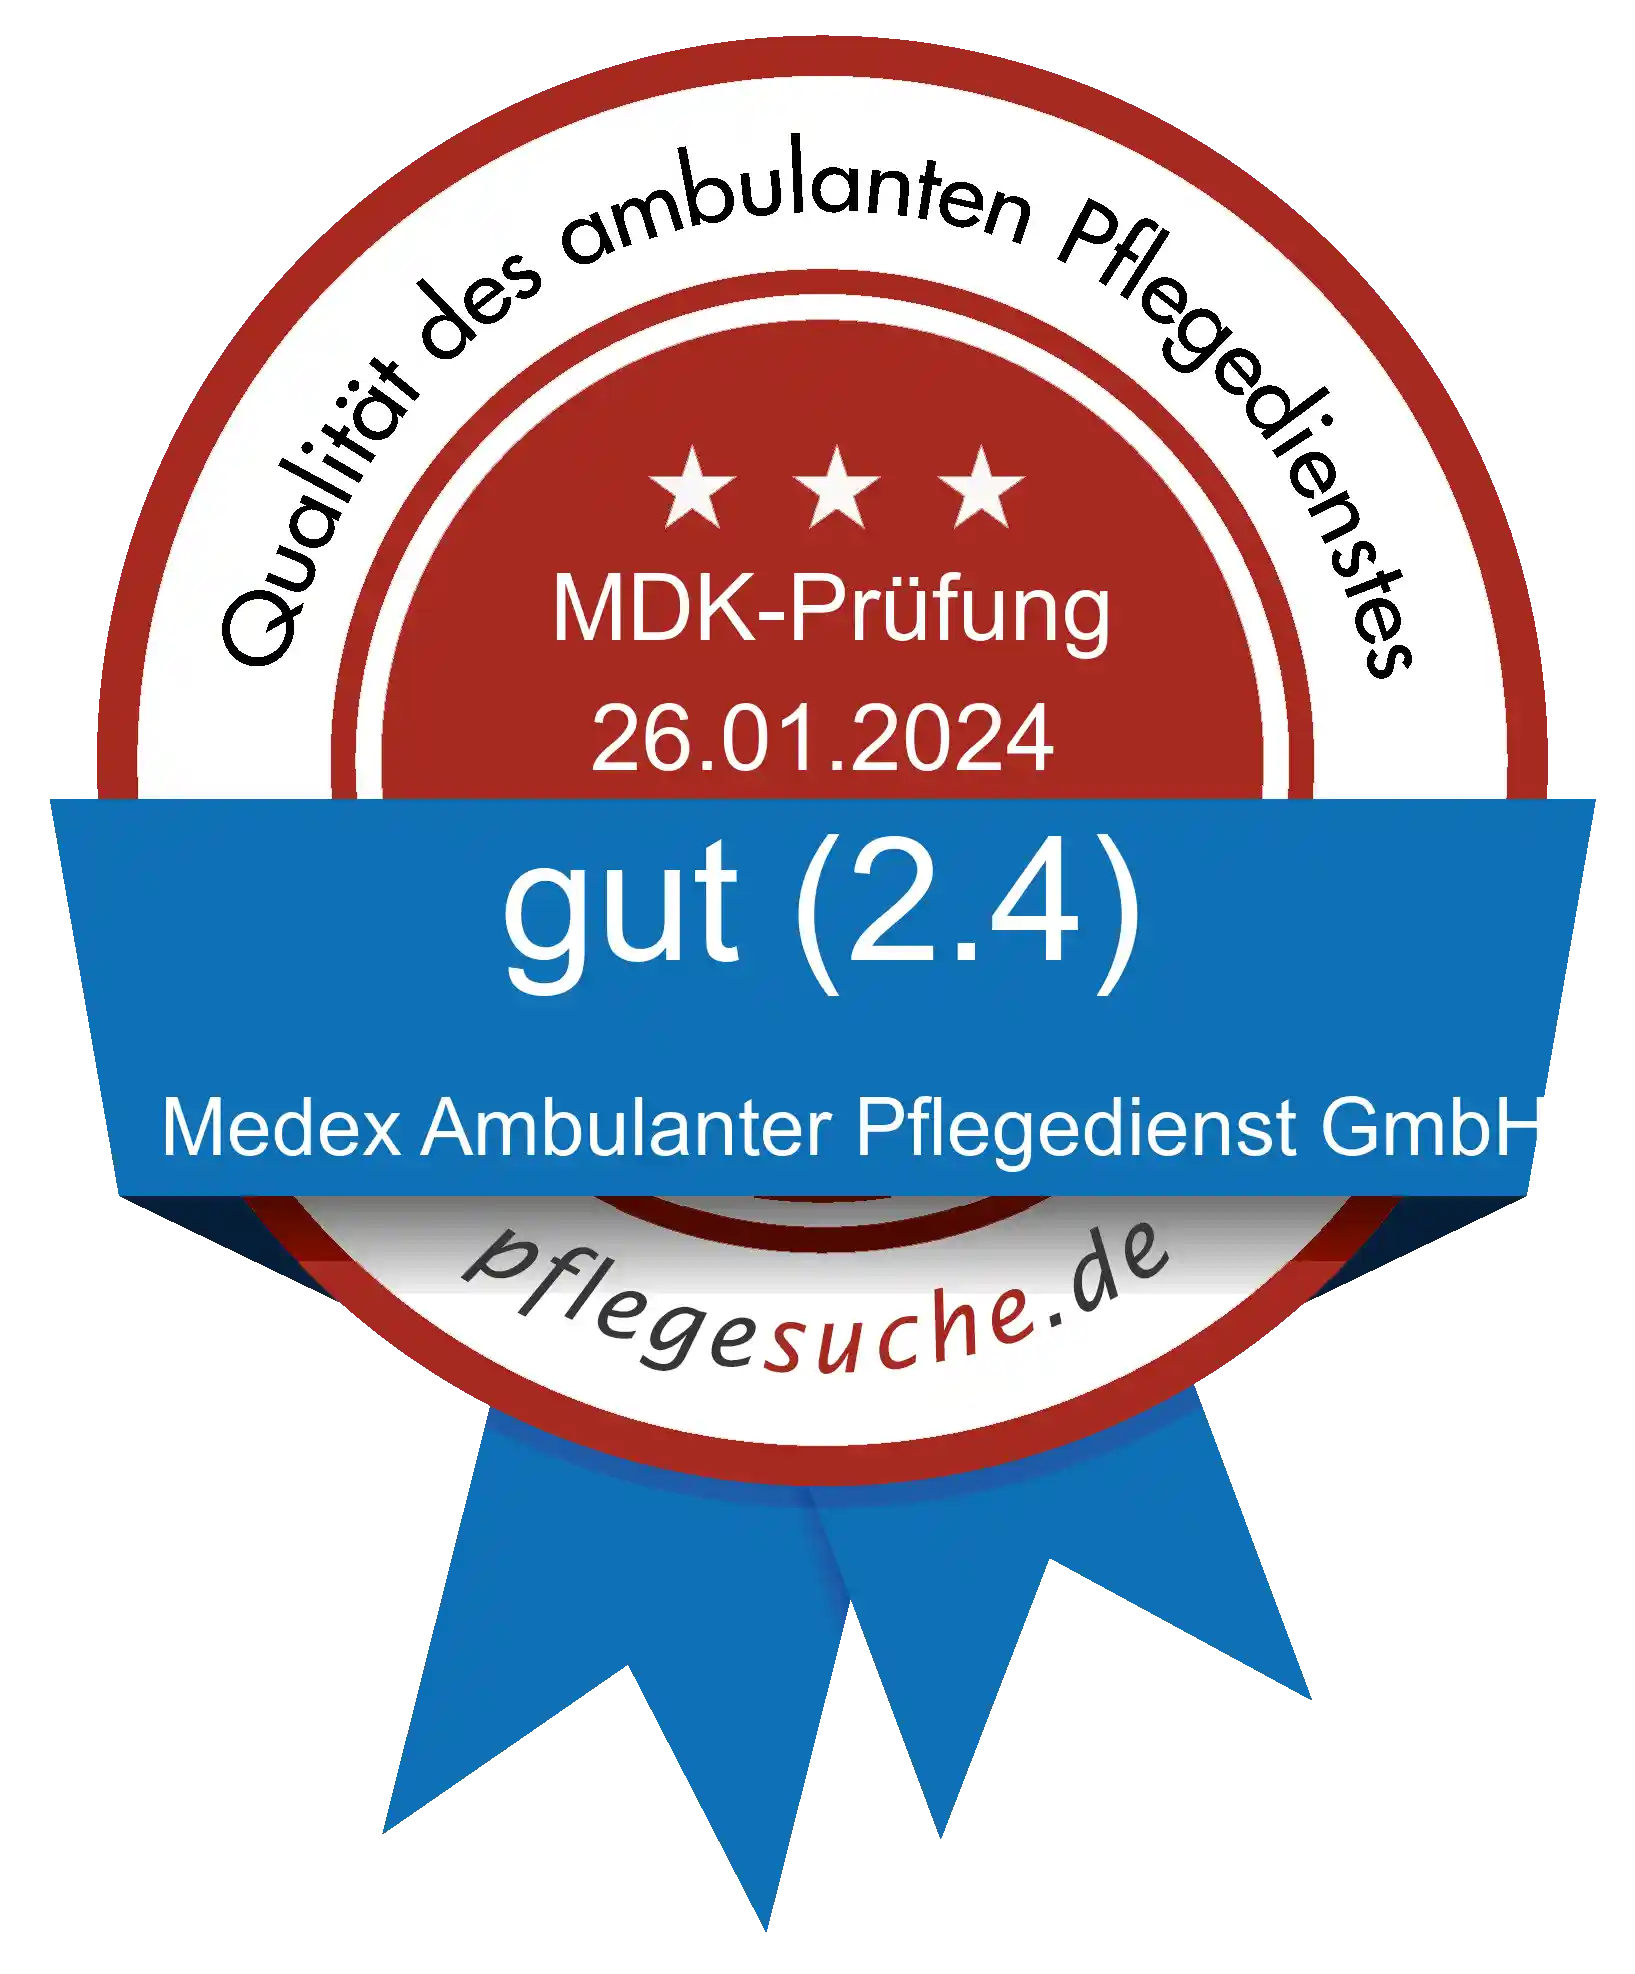 Siegel Benotung: Medex Ambulanter Pflegedienst GmbH